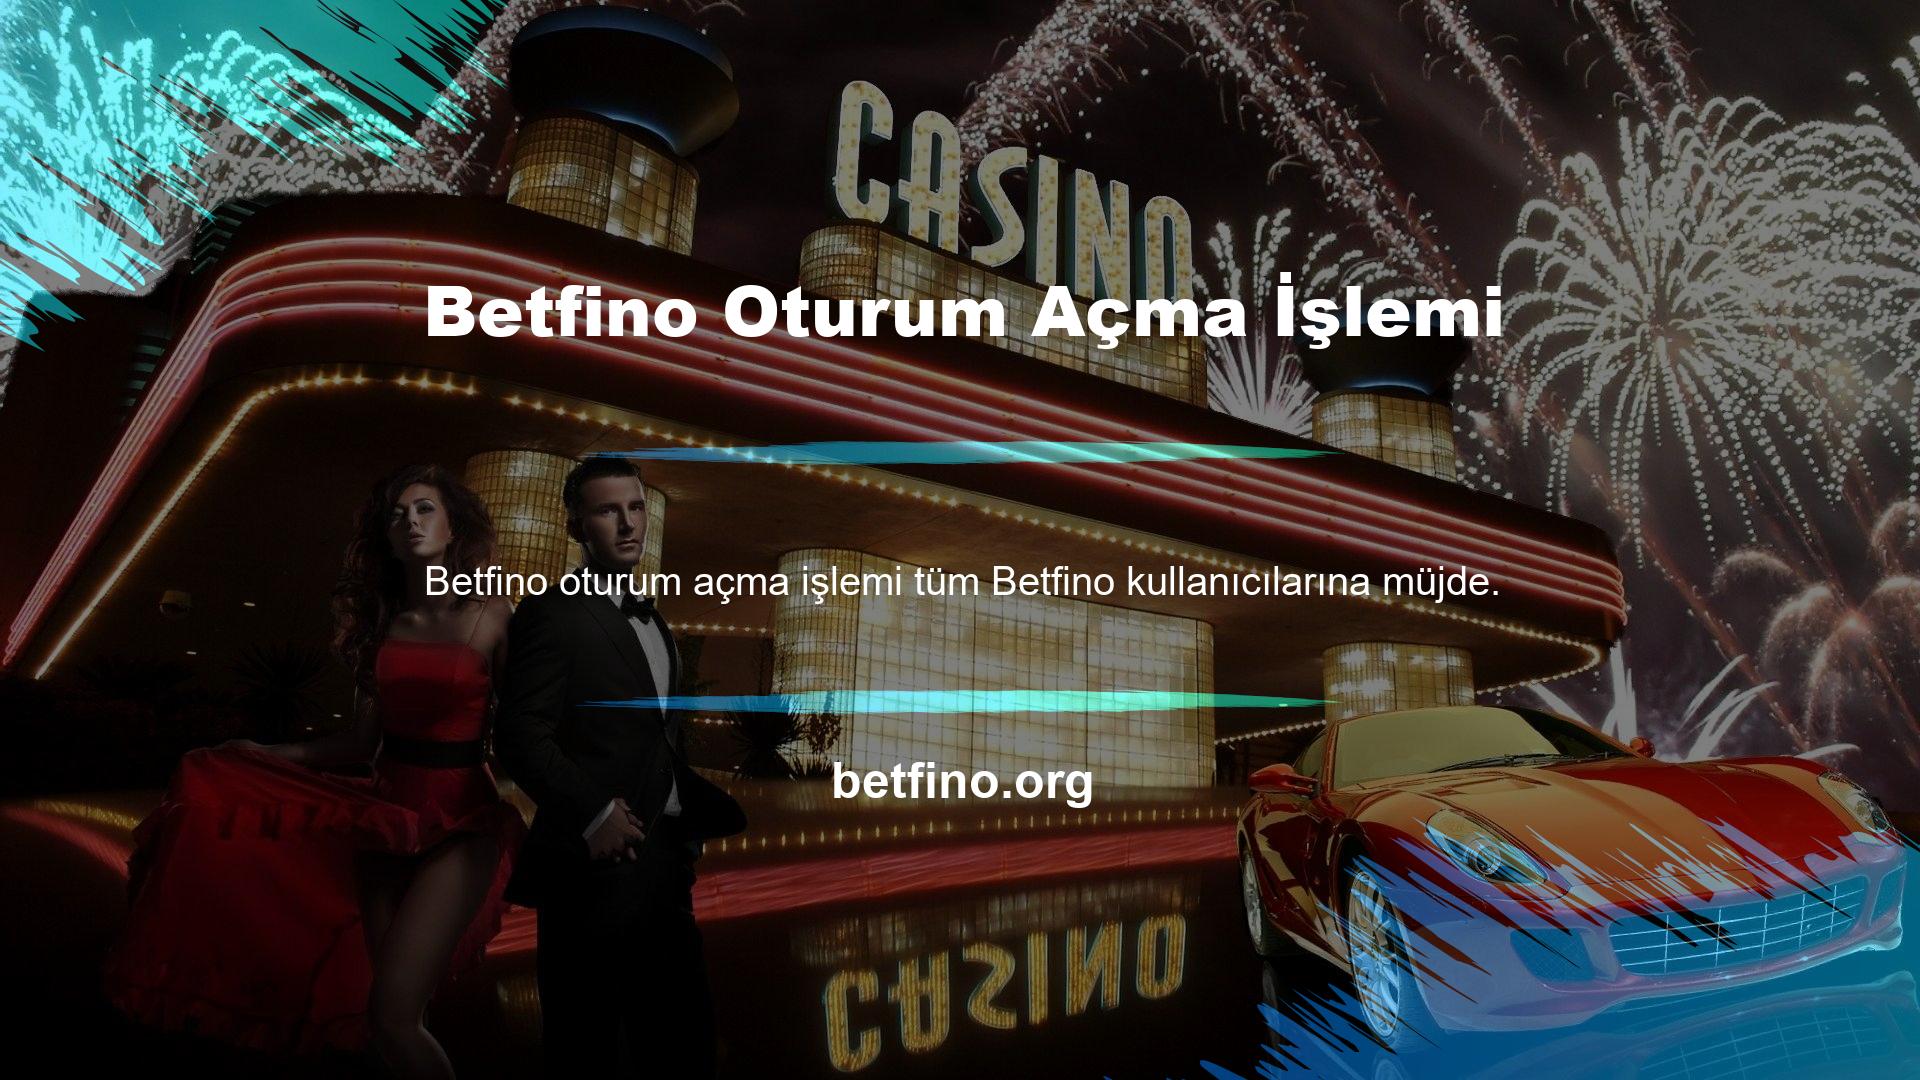 Artık Betfino domain adresinizle ilgili herhangi bir sorunla karşılaşmayacaksınız